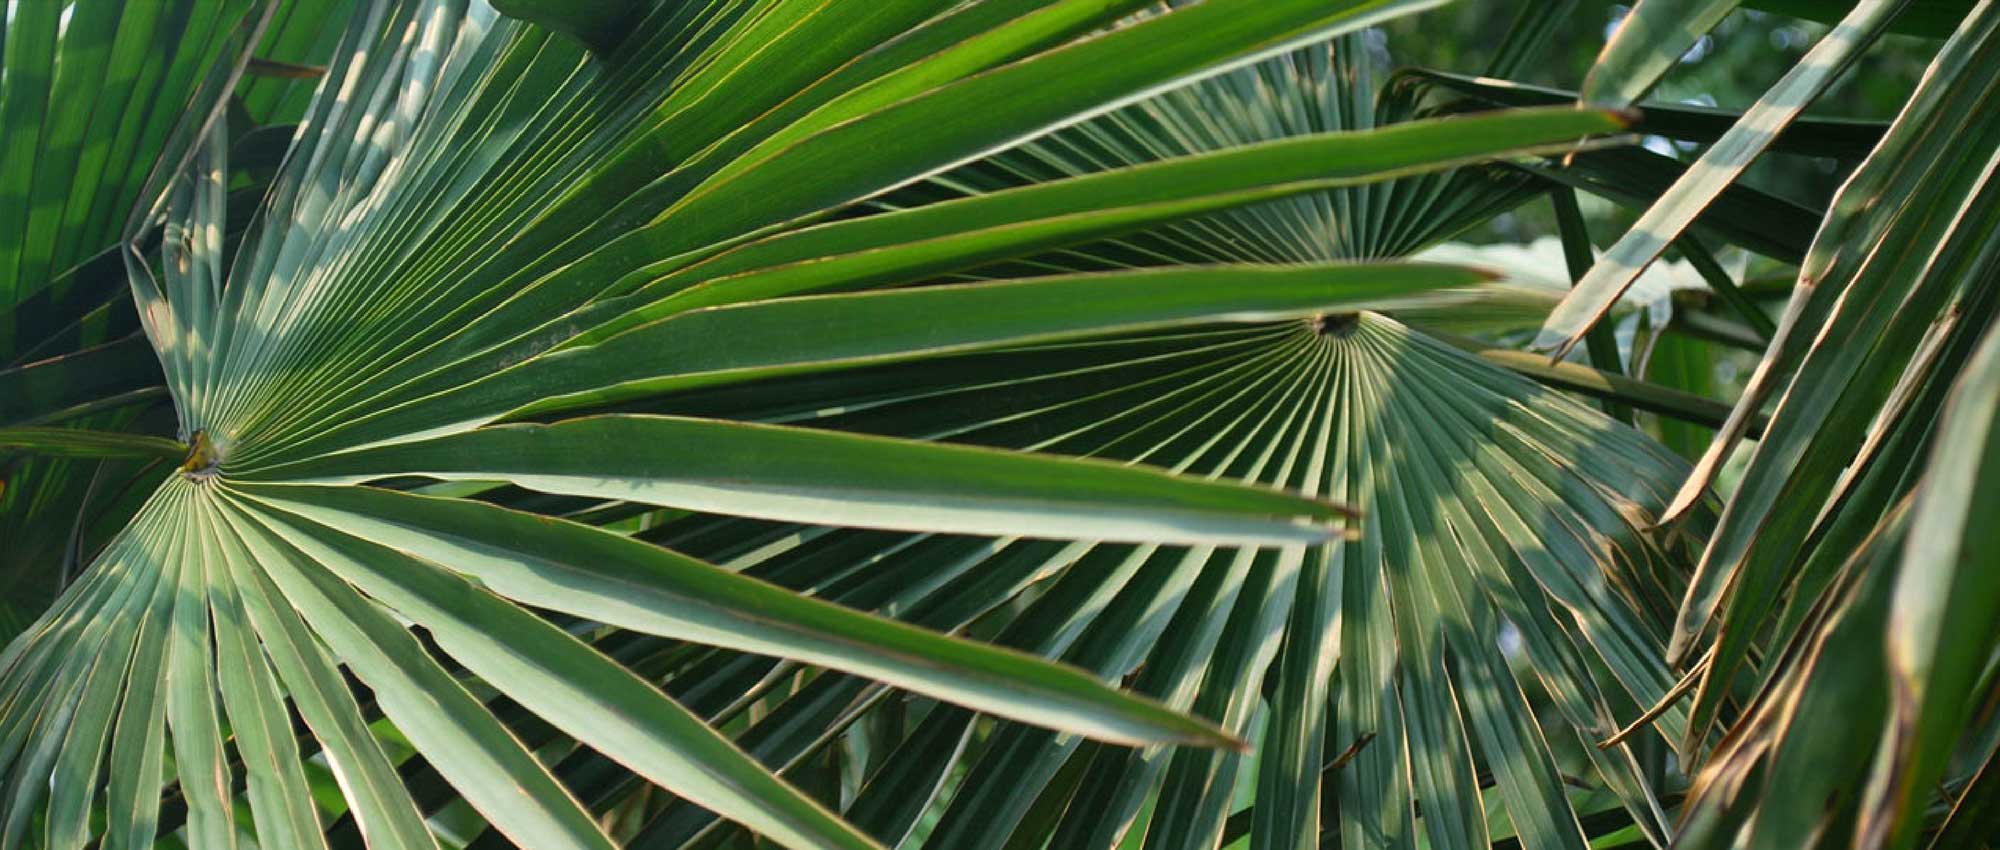 Les palmiers : planter, cultiver et entretenir